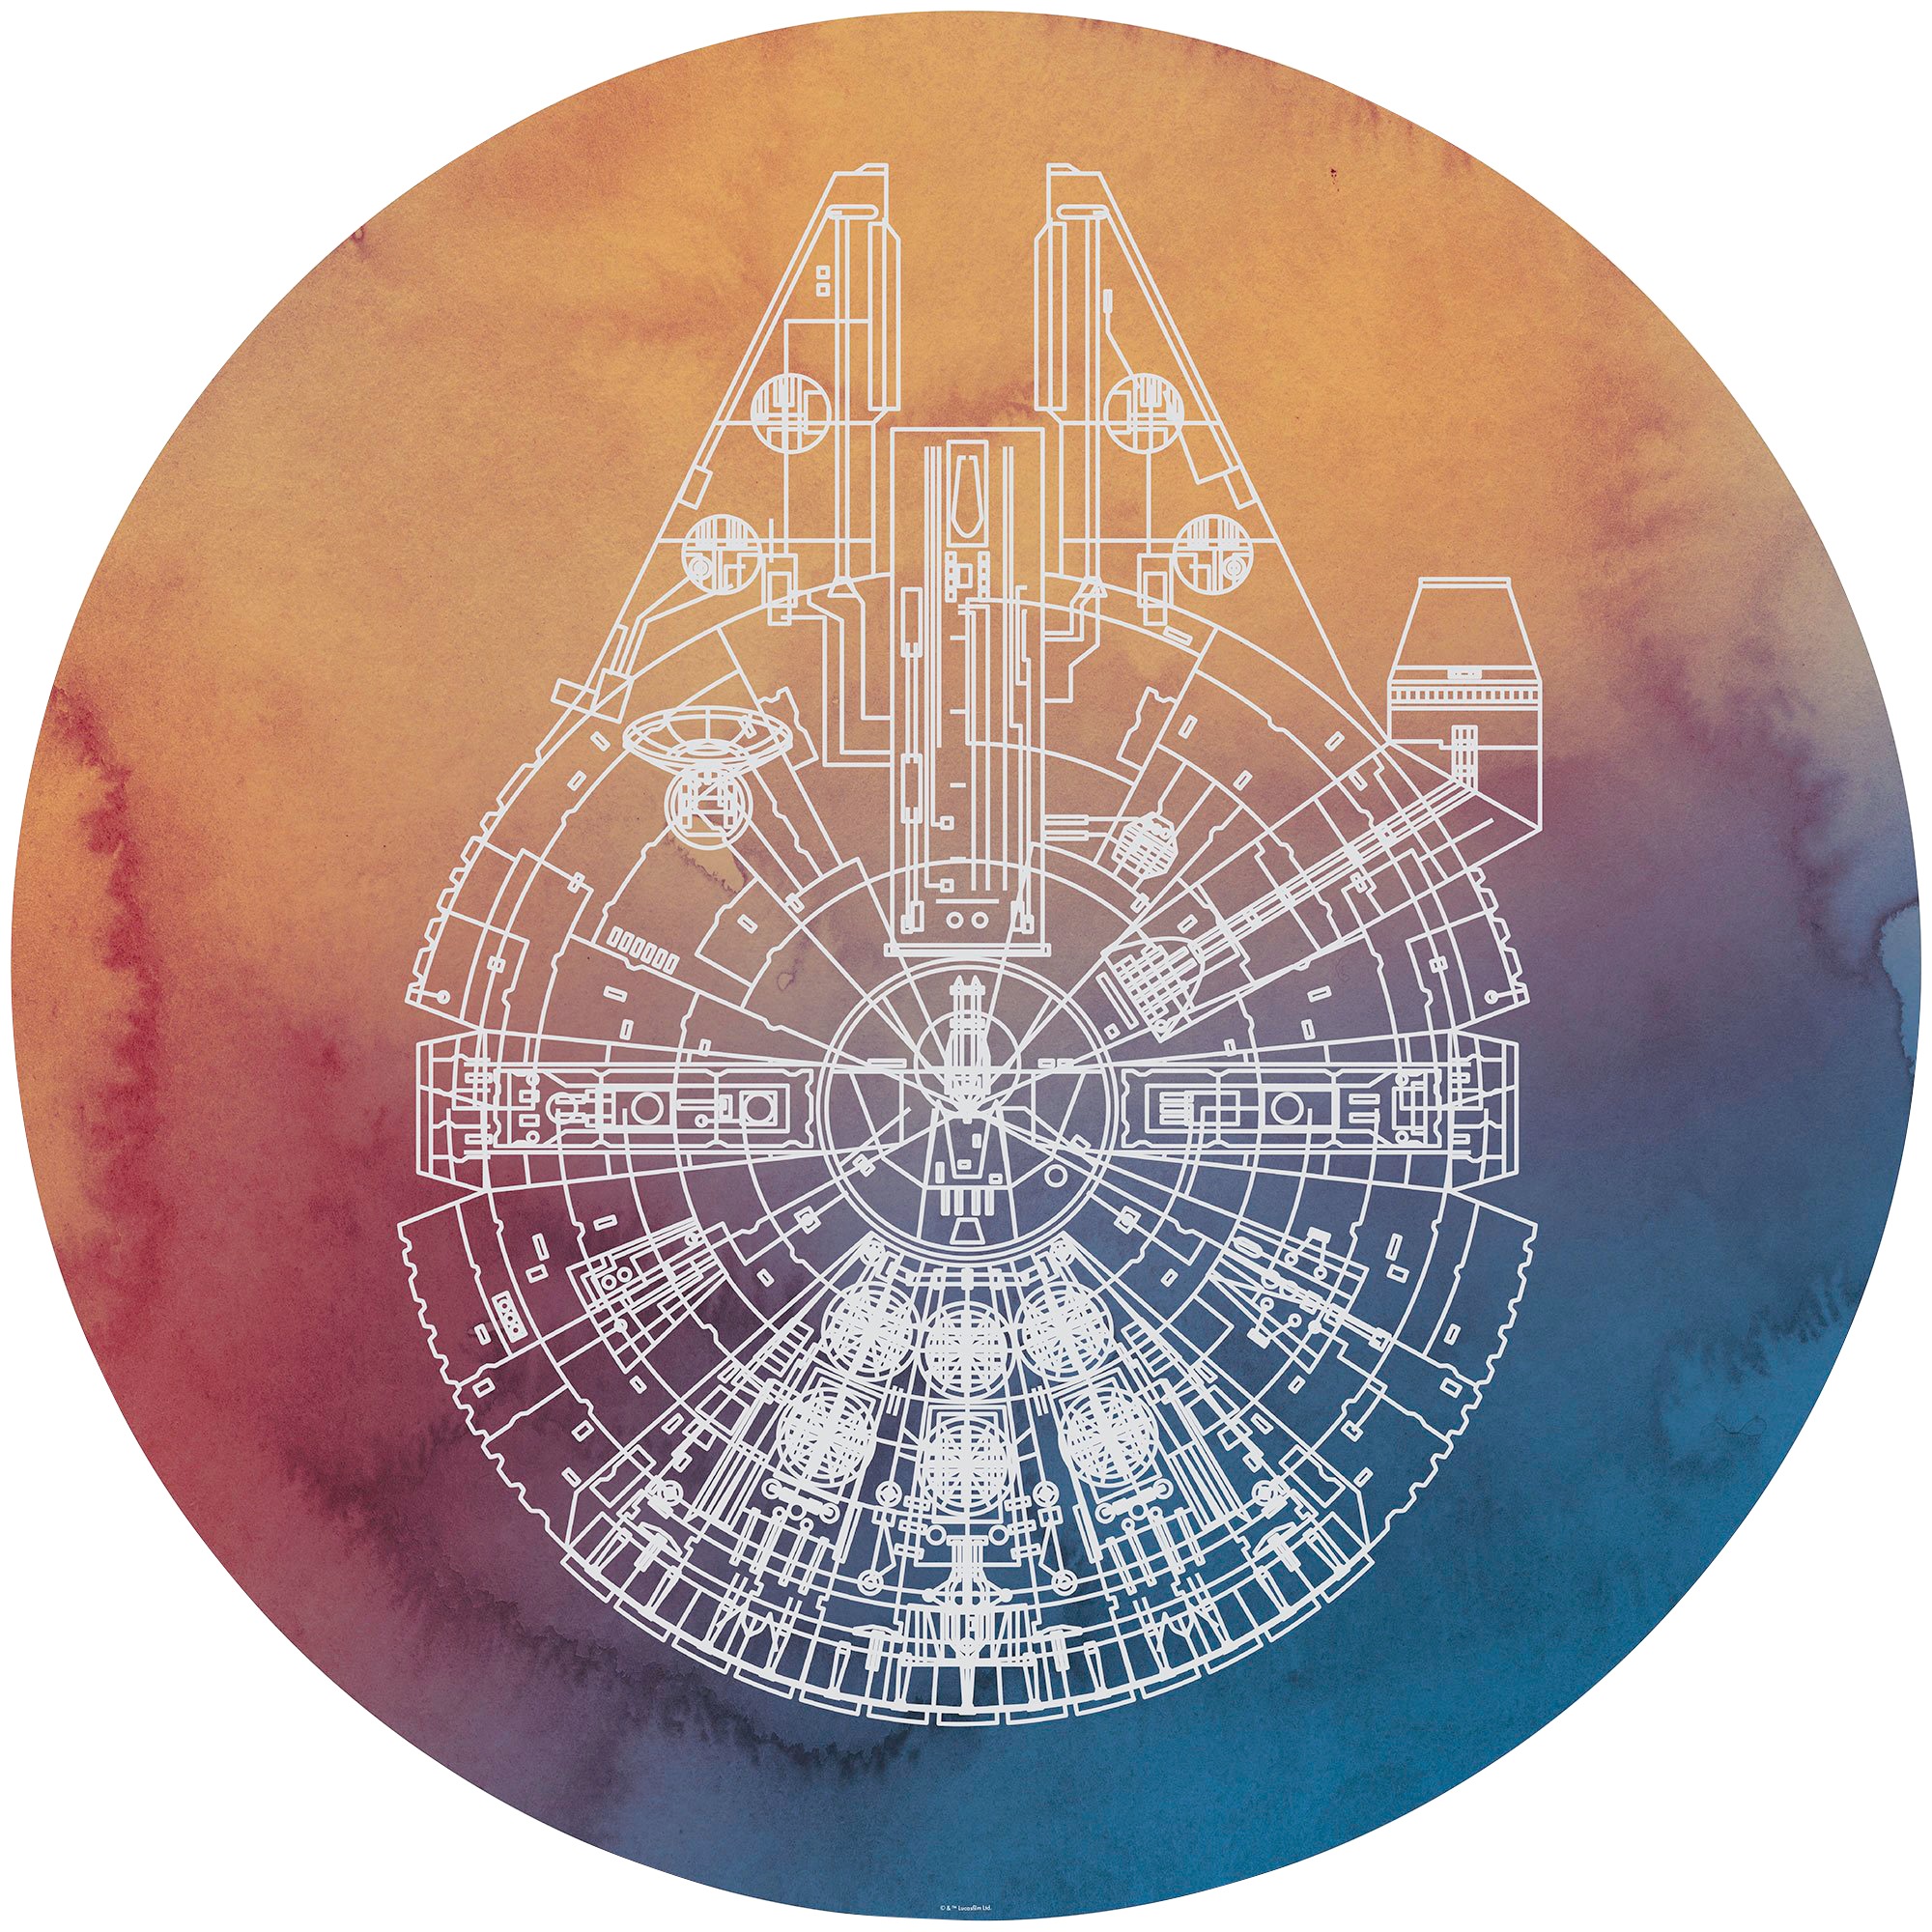 Fototapete »Star Wars Millennium Falcon«, 125x125 cm (Breite x Höhe), rund und...